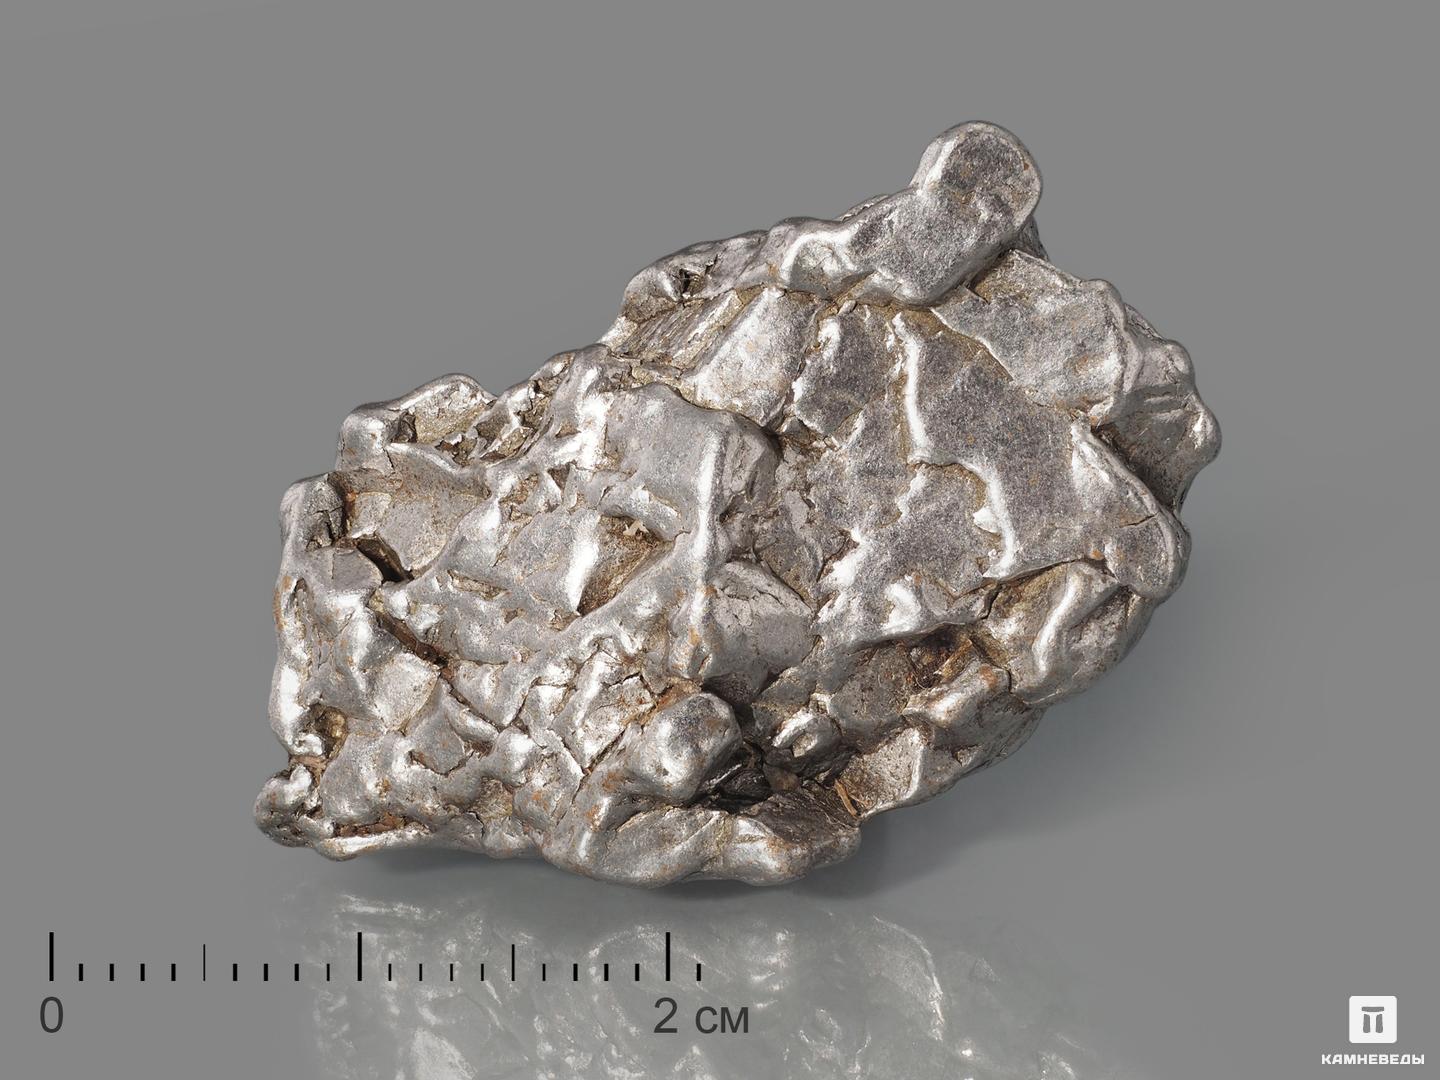 Метеорит Кампо-дель-Сьело, осколок 3-4 см (26-28 г) метеорит кампо дель сьело осколок 2 3 5 см 8 10 г